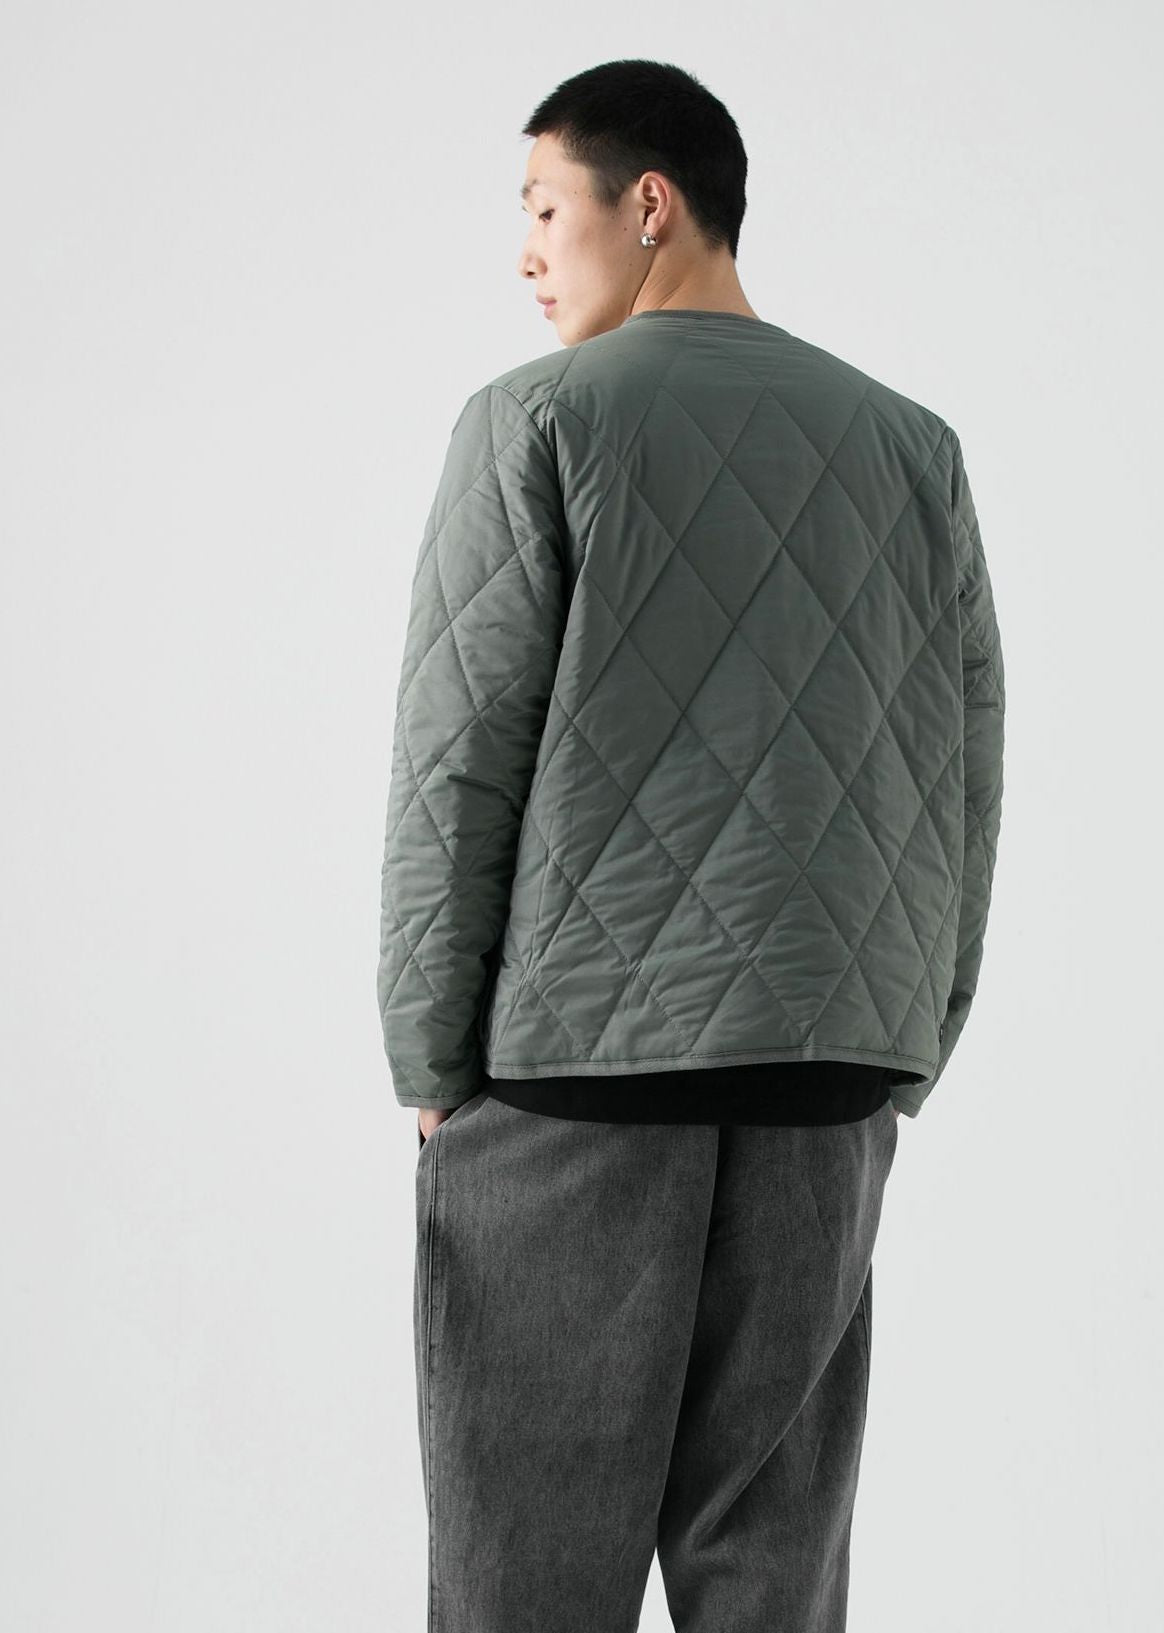 Calvin Klein quilting no collar jacket - ノーカラージャケット